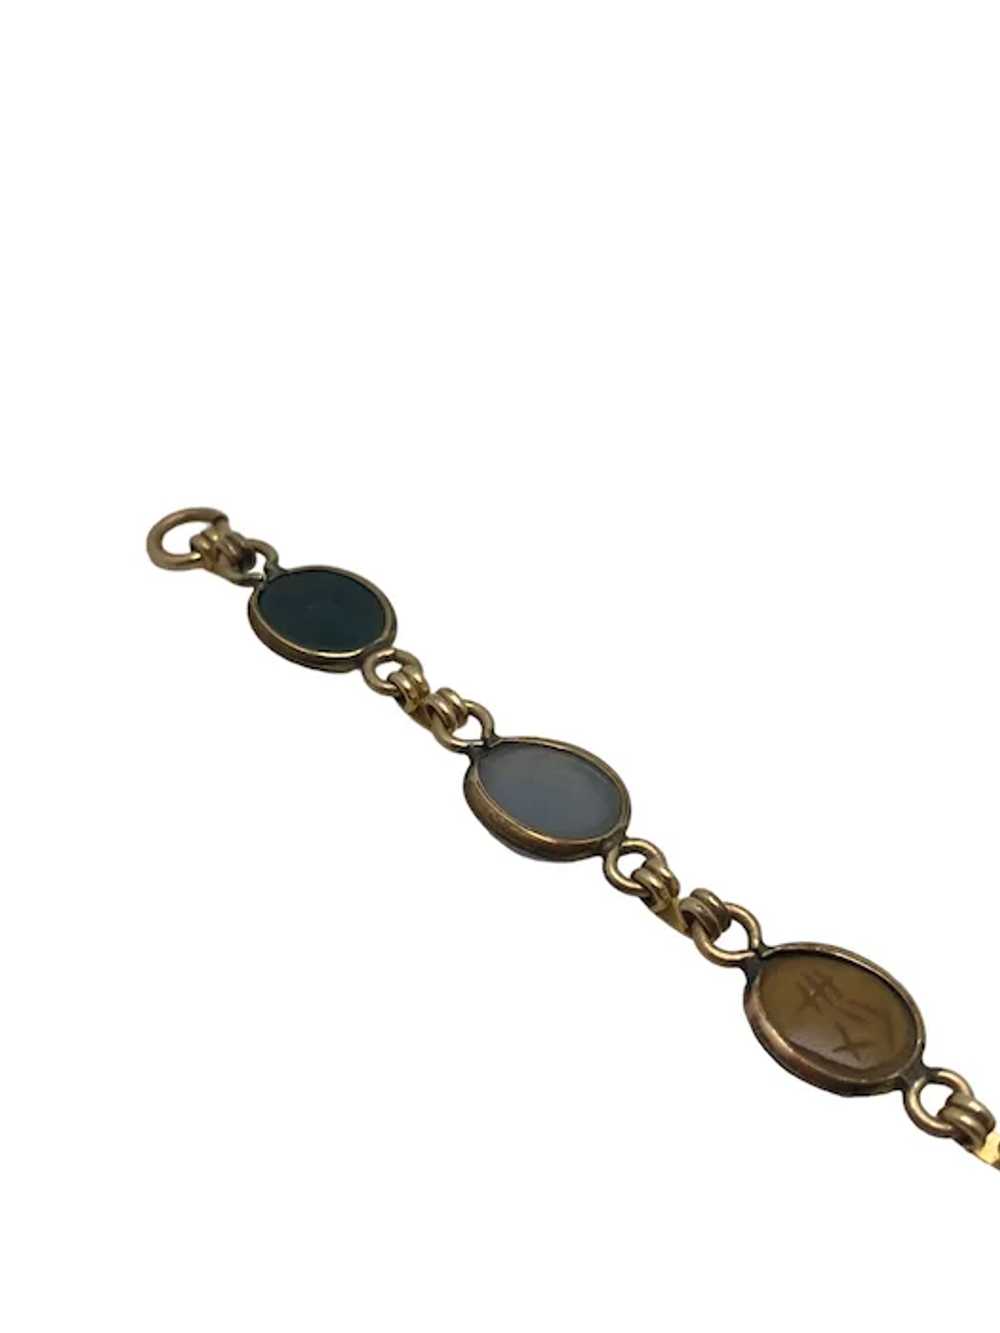 Vintage 12k Gold Filled Scarab Bracelet - image 8